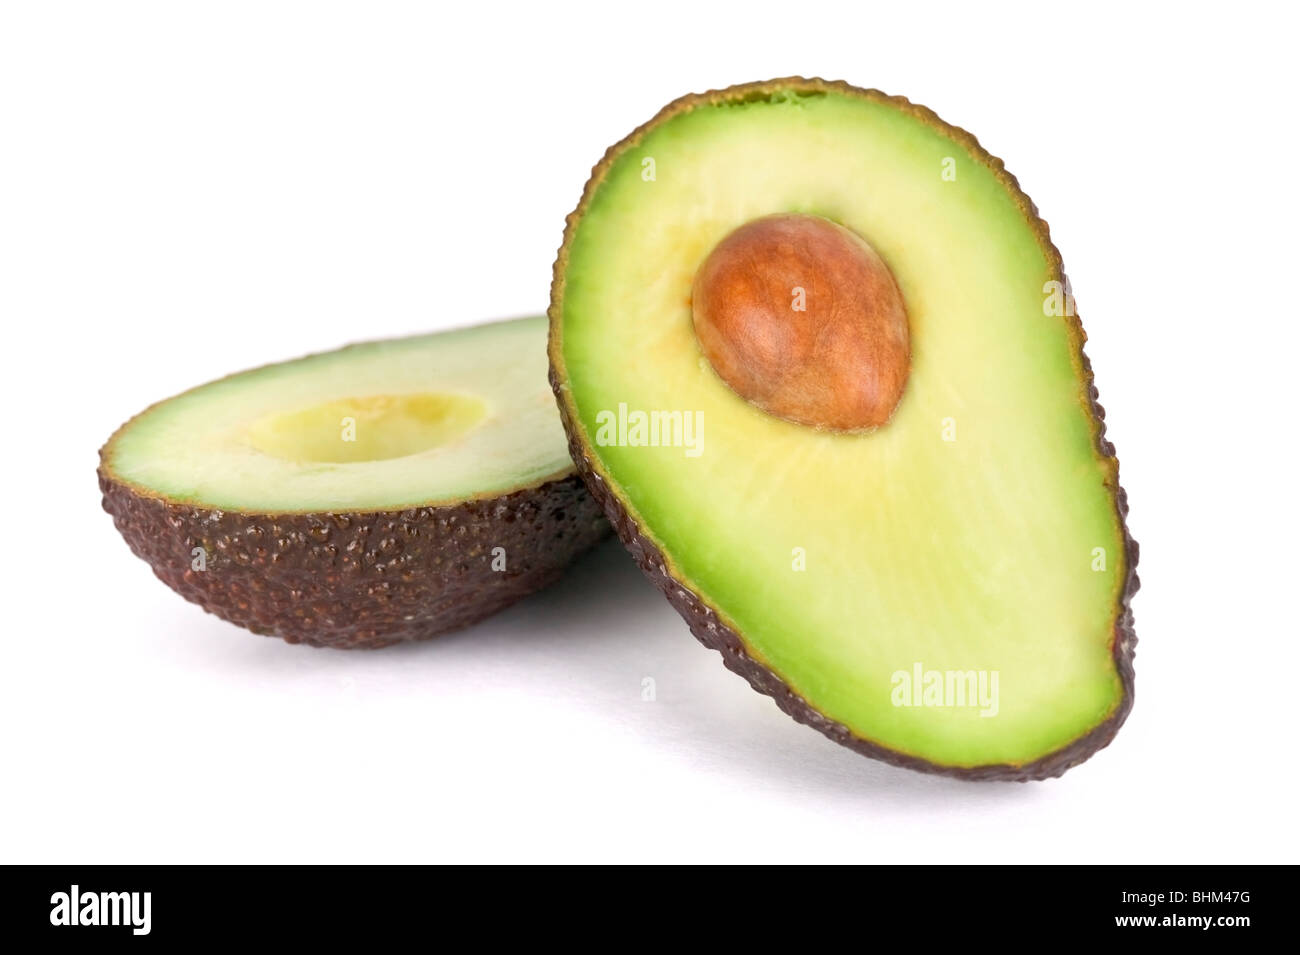 Avocado-Hälften auf weißen Hintergrund, eine Hälfte mit Stein/Kern. Stockfoto